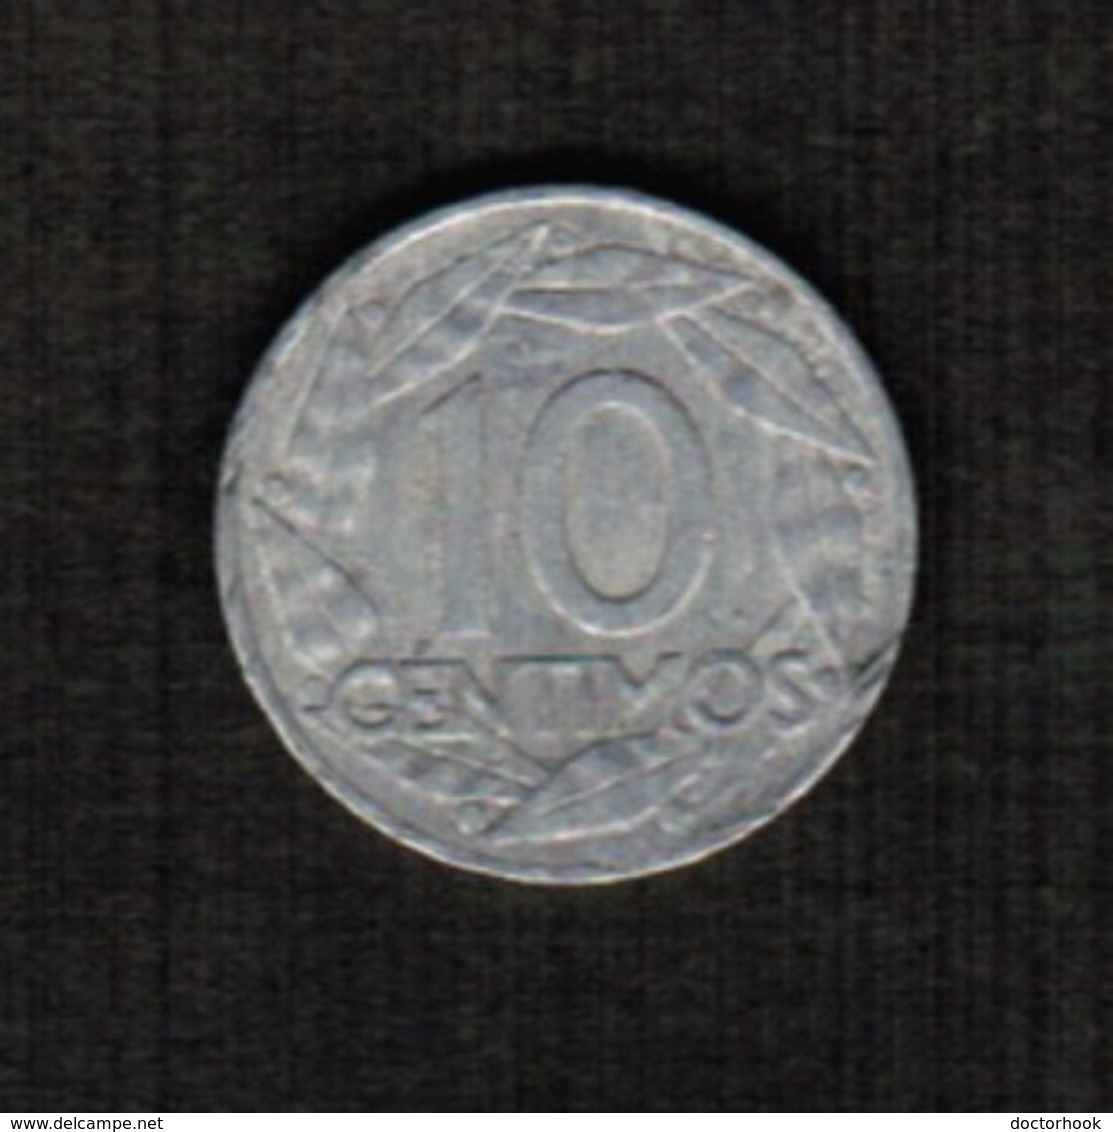 SPAIN  10 CENTIMOS 1959 (KM # 790) #5296 - 10 Céntimos